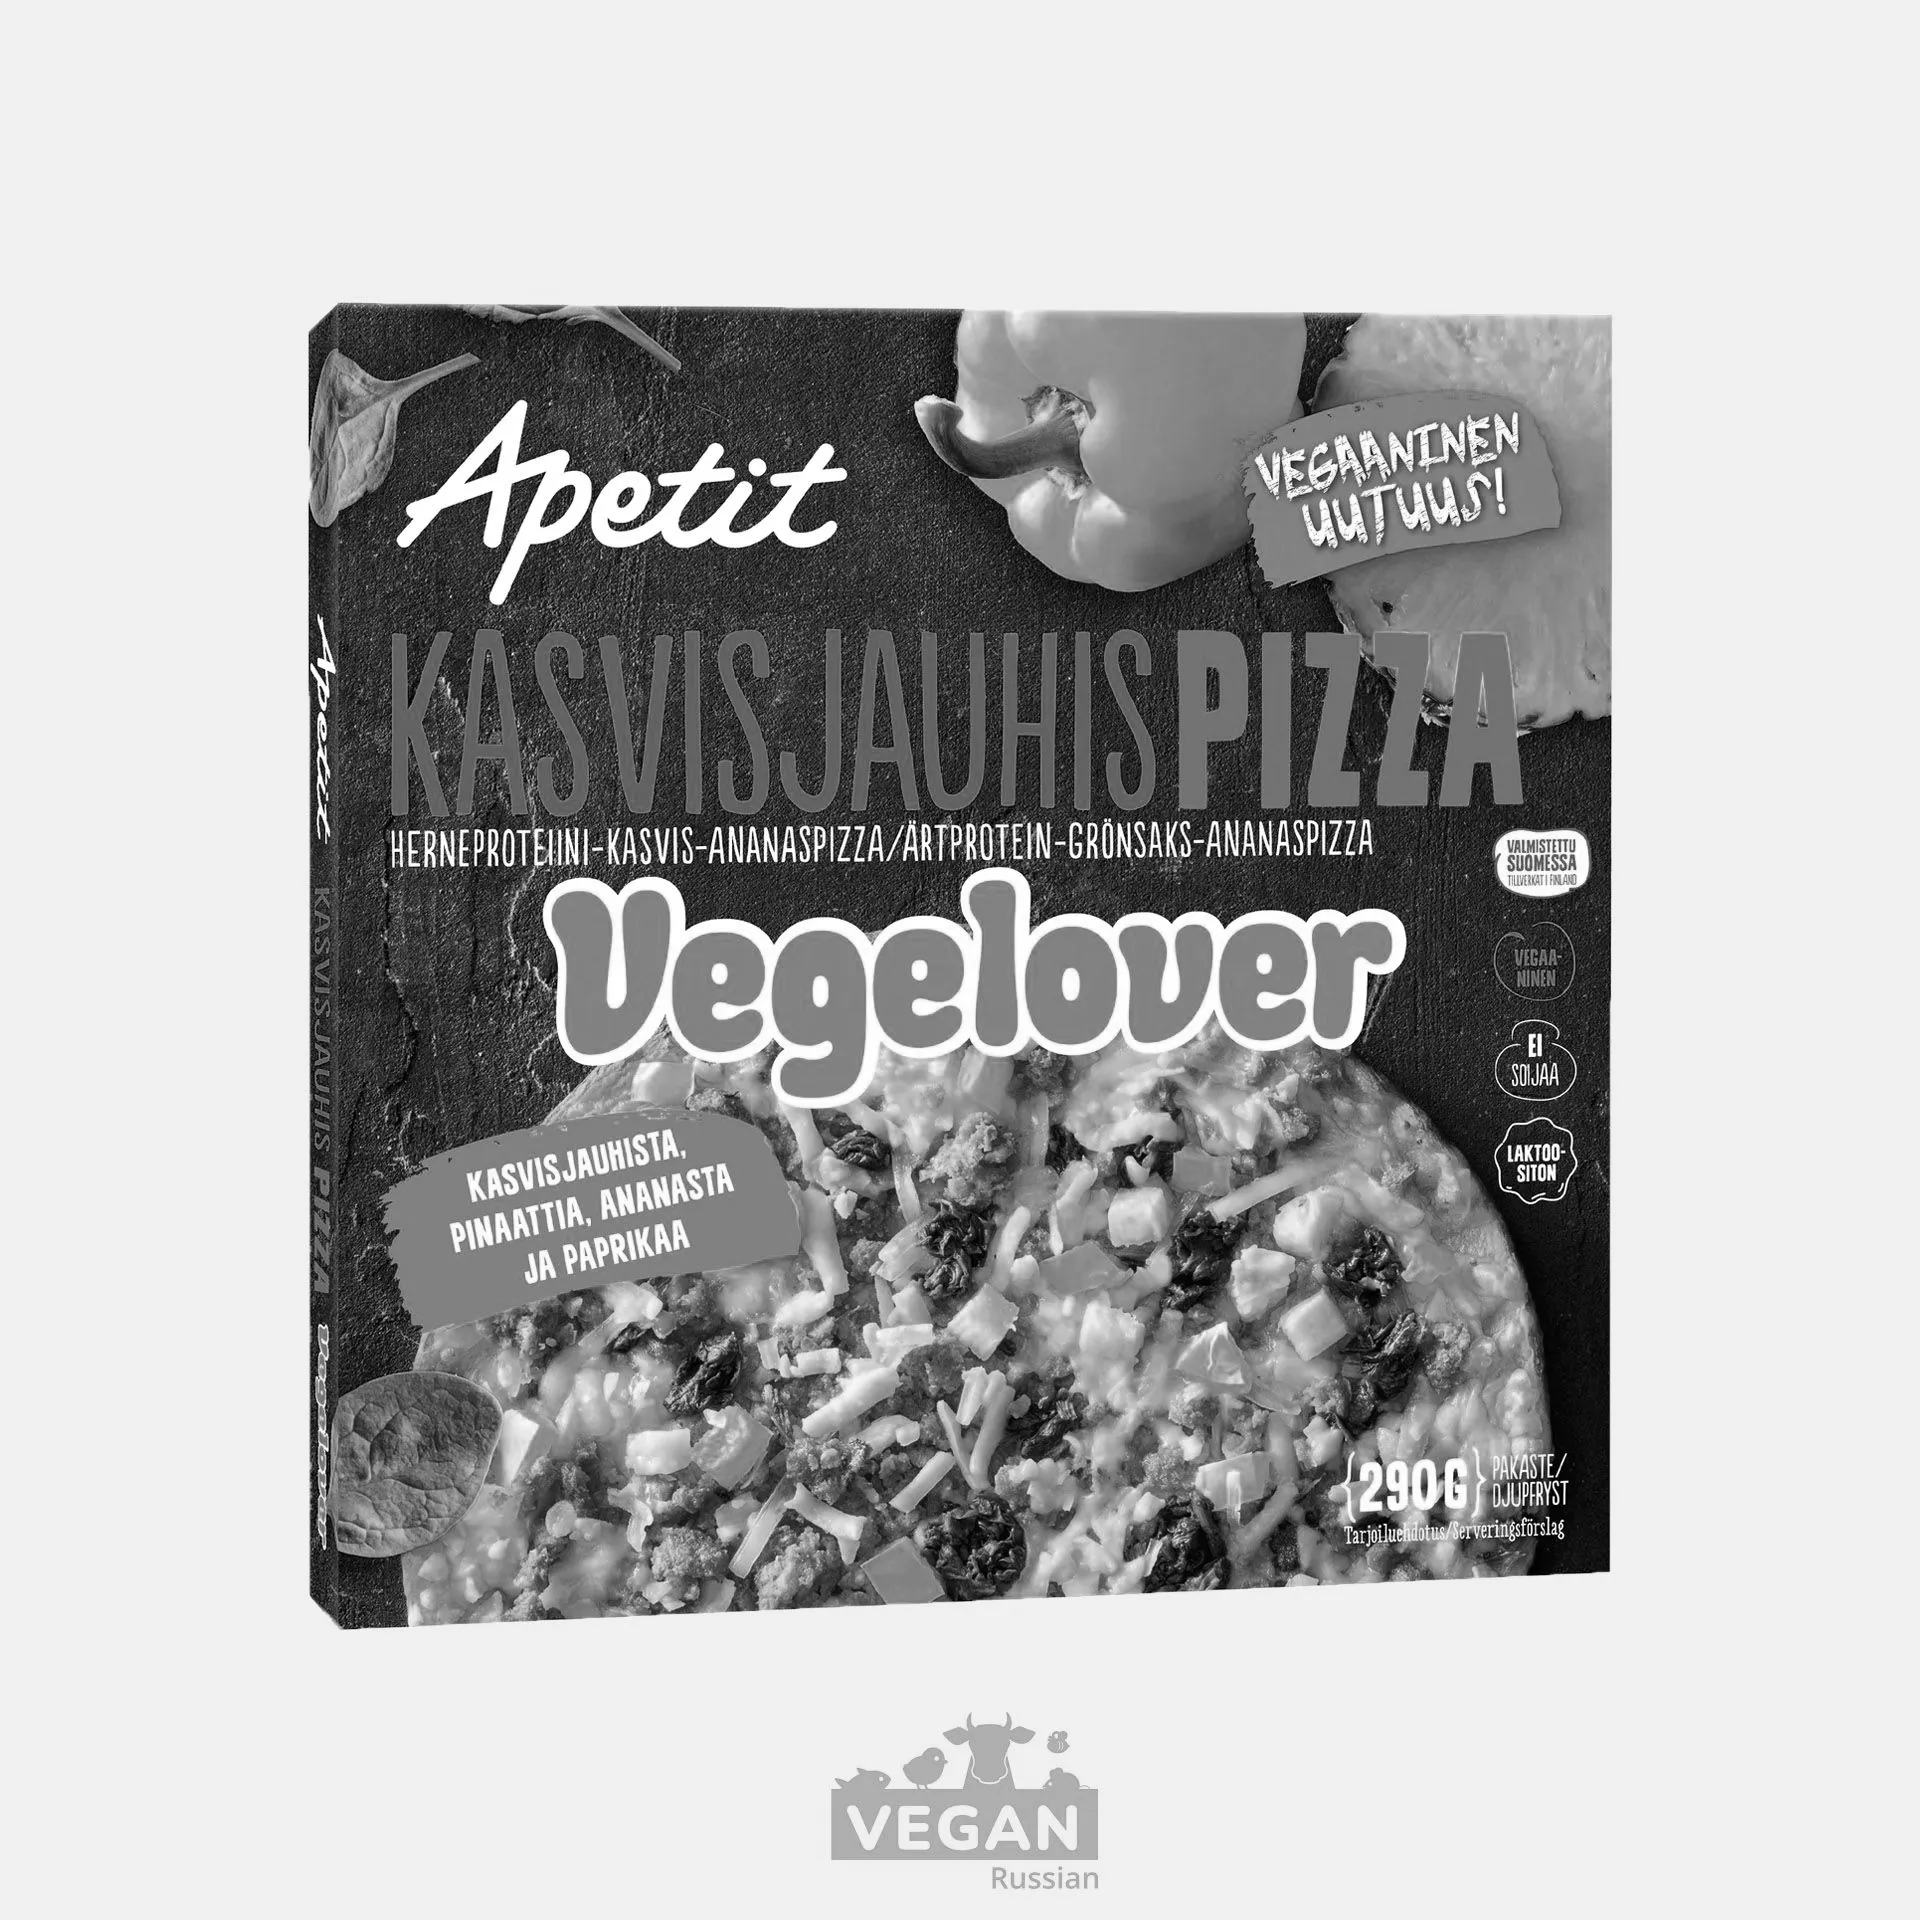 Архив: Пицца Vegelover Apetit 290 г